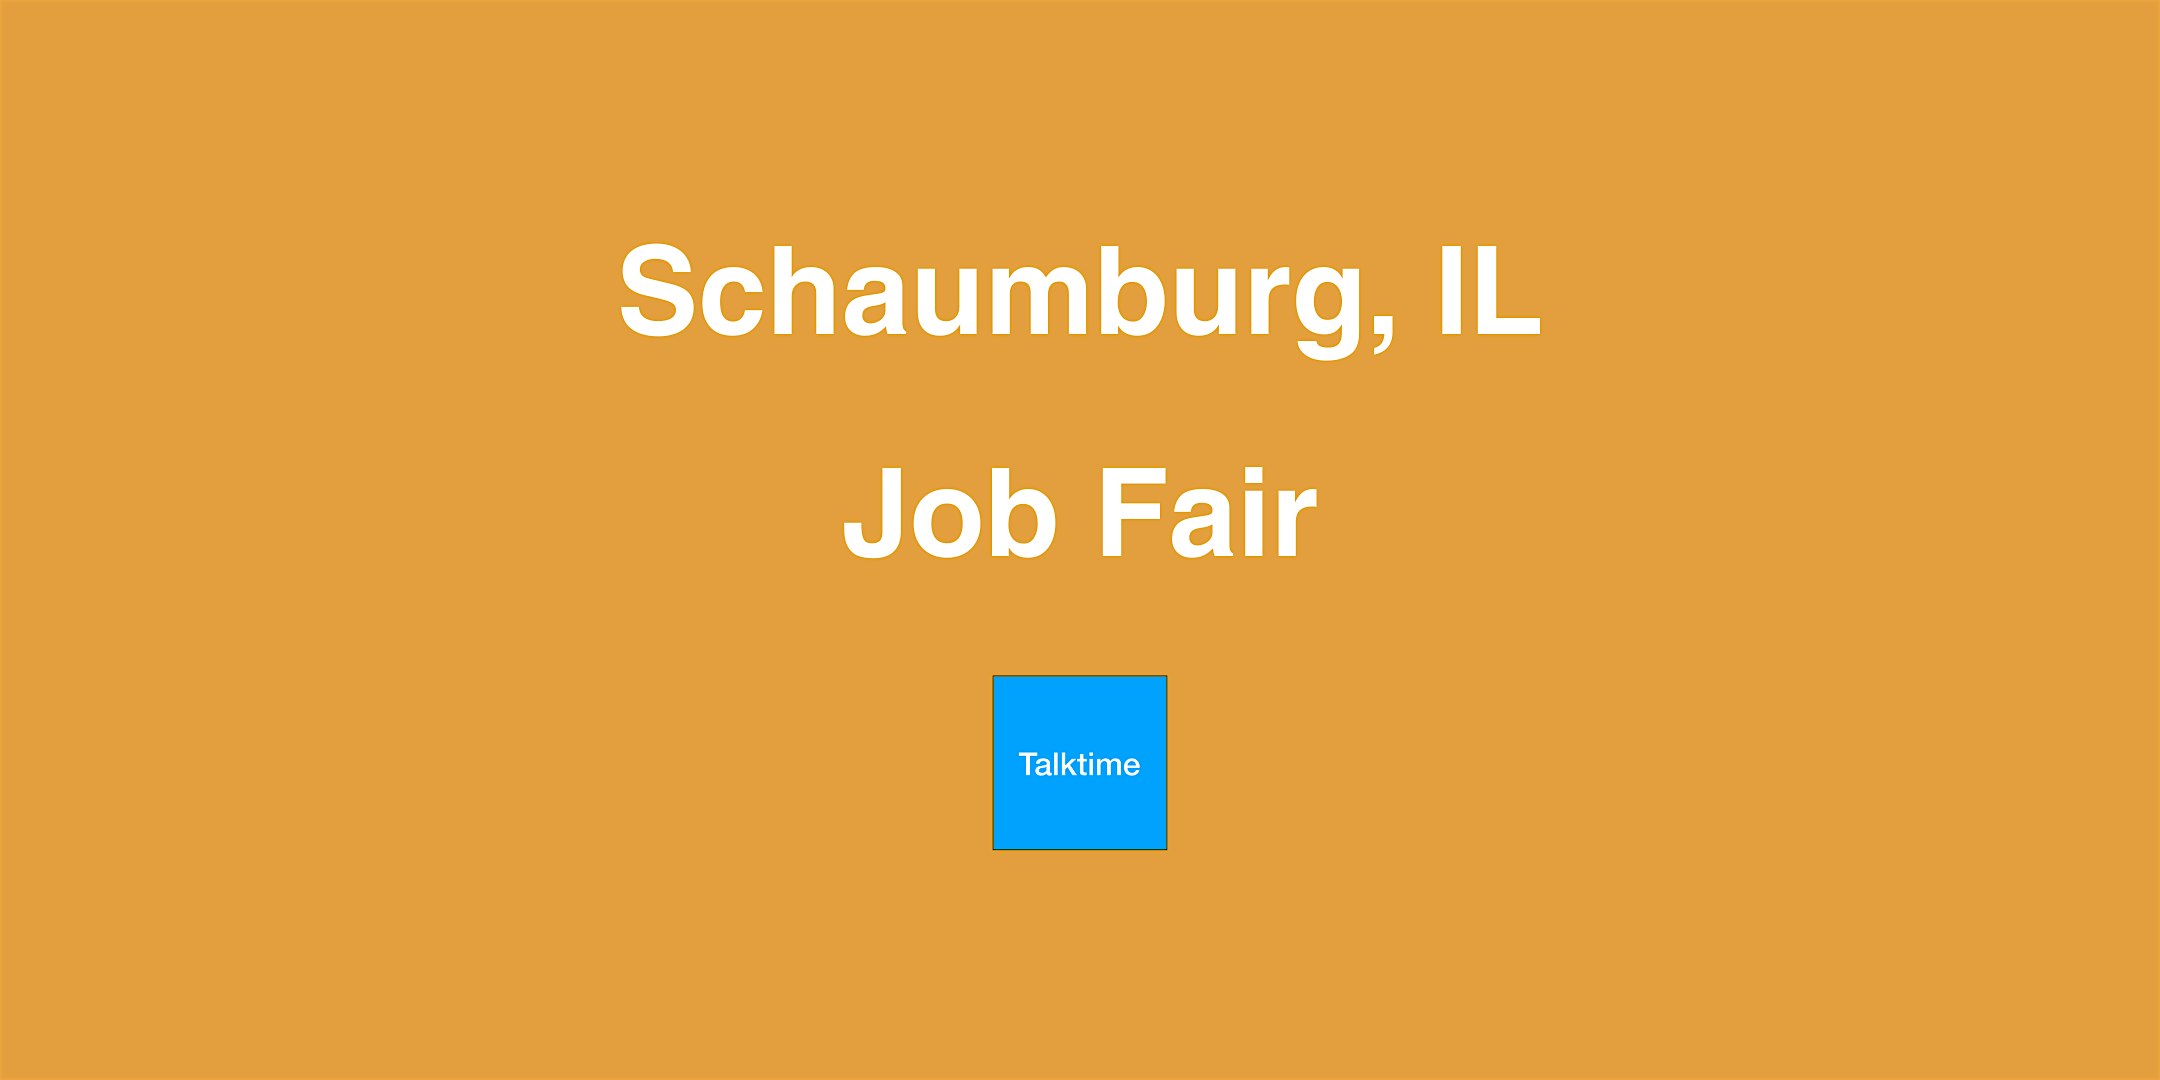 Job Fair - Schaumburg